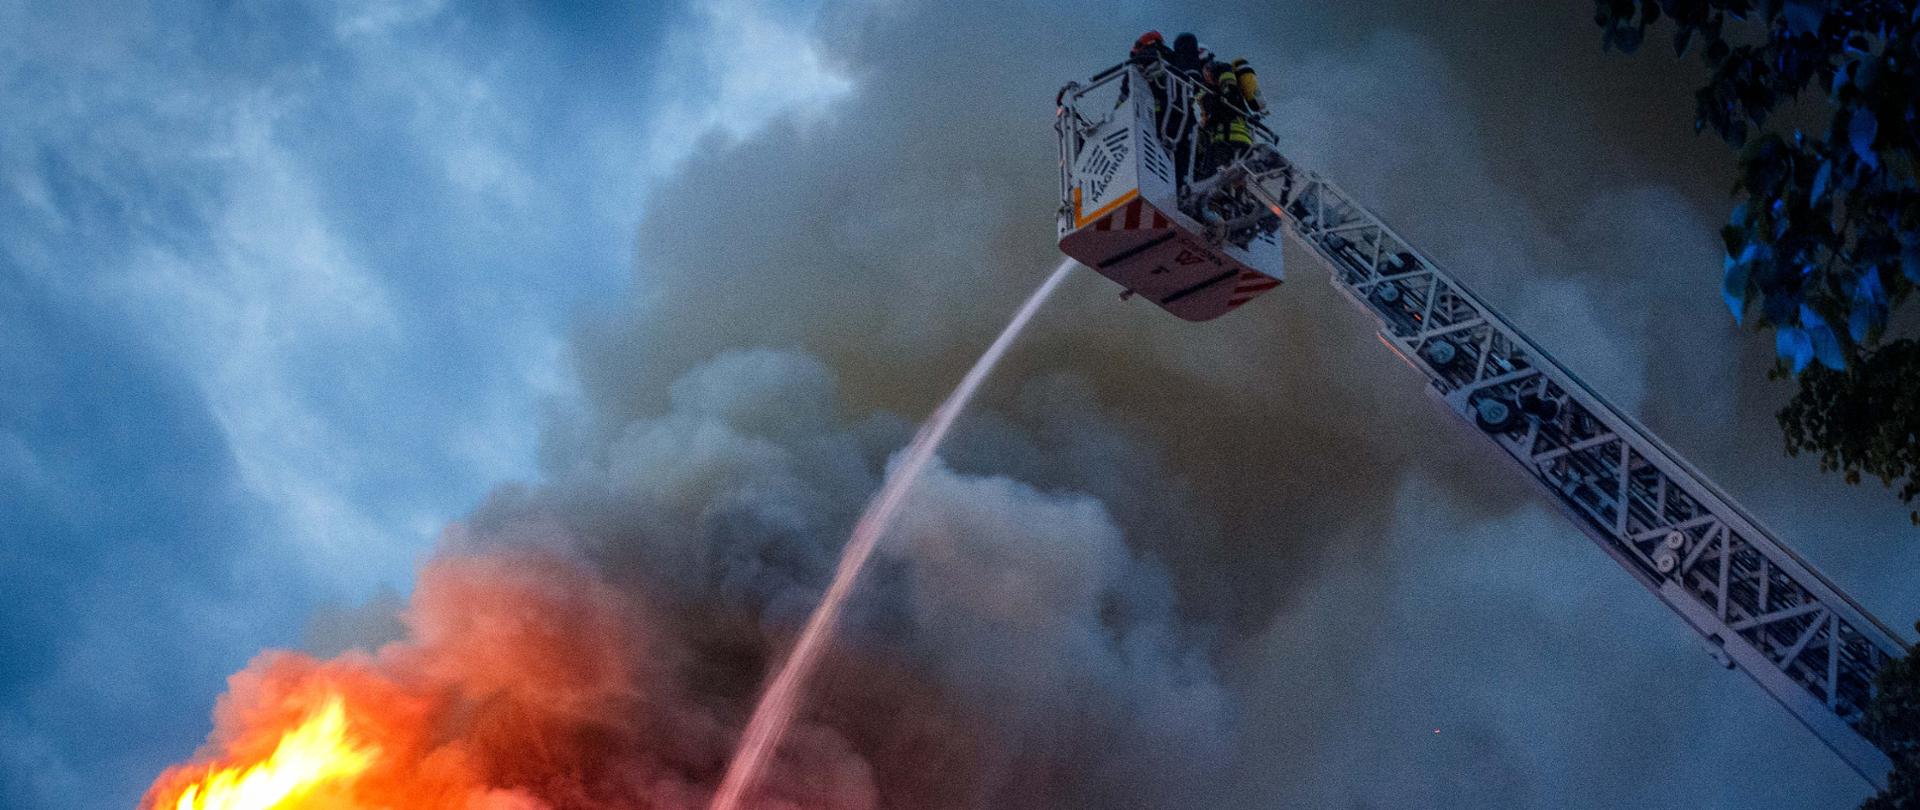 Zdjęcia przedstawia płonący budynek oraz strażaków którzy podają wodą z drabiny pożarniczej